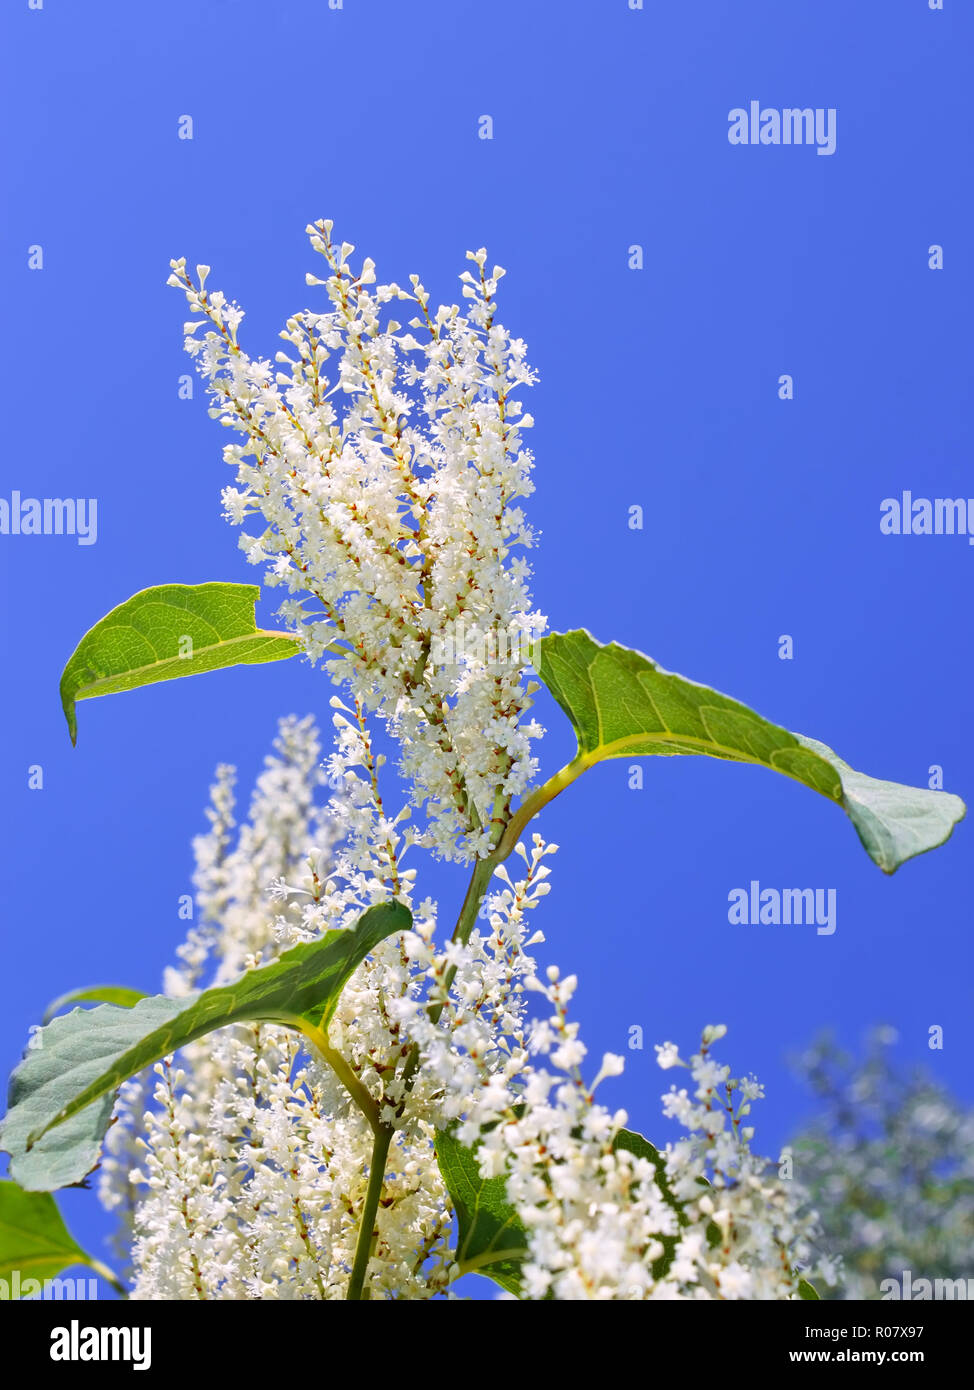 Les inflorescences de la renouée du Japon (Fallopia japonica) avec de petites fleurs blanches en automne Banque D'Images